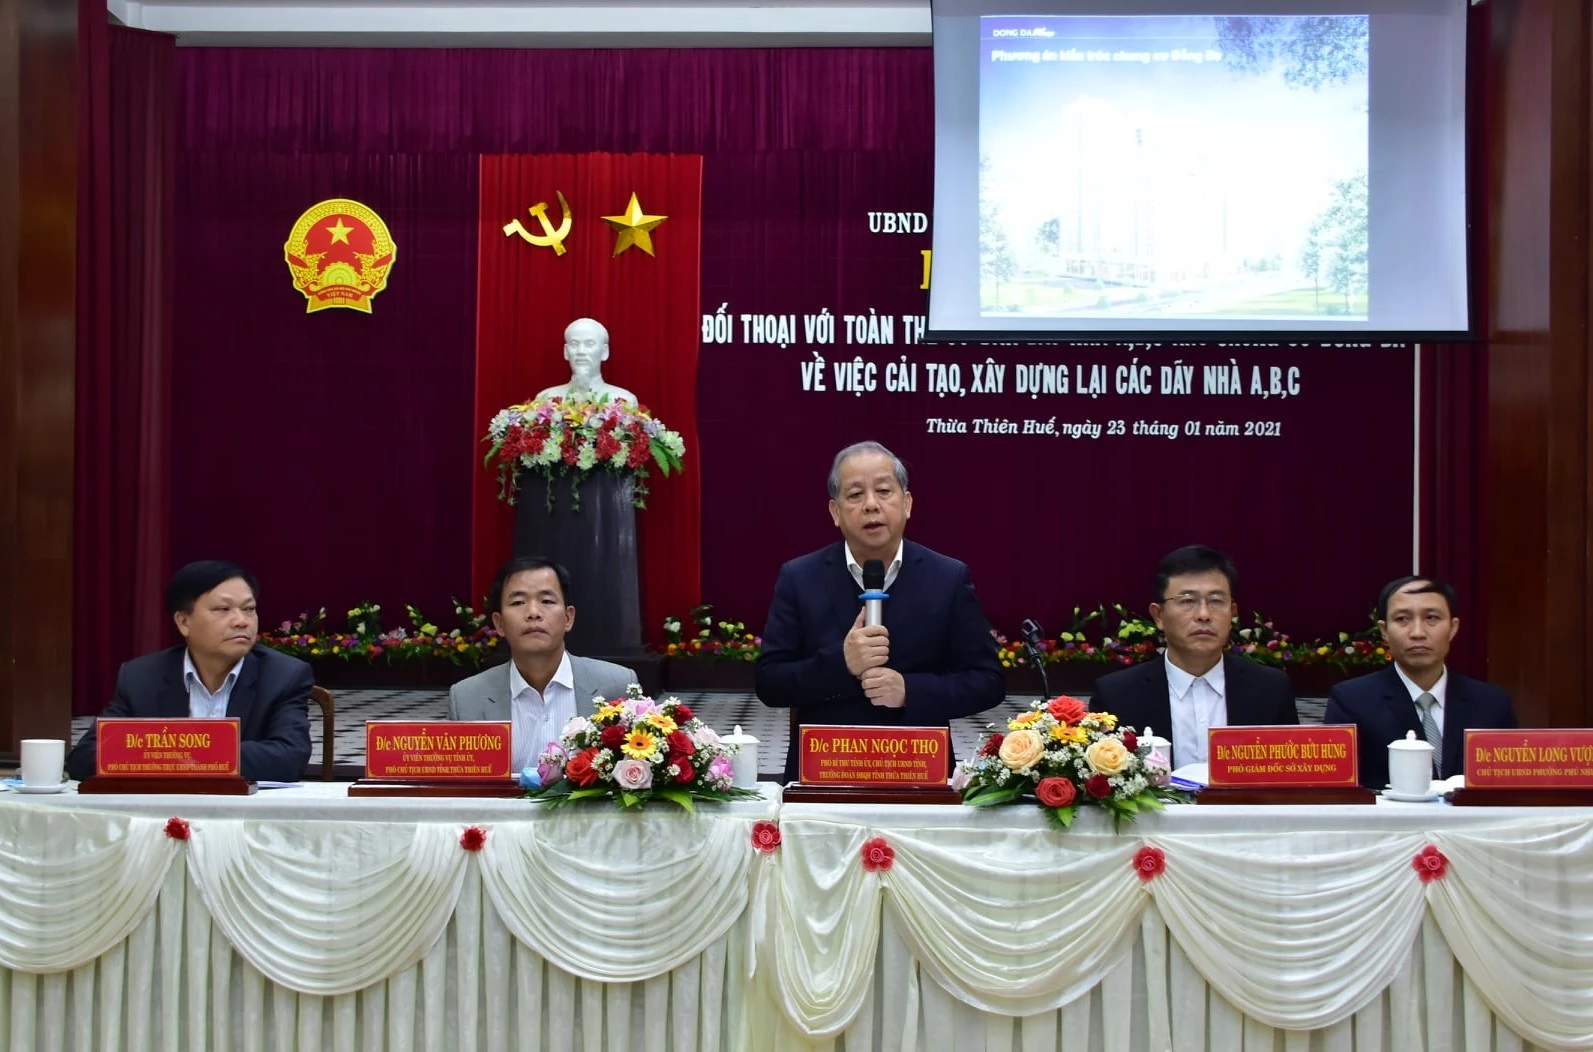 Chủ tịch UBND tỉnh Thừa Thiên Huế Phan Ngọc Thọ trao đổi, chia sẻ thông tin với người dân.